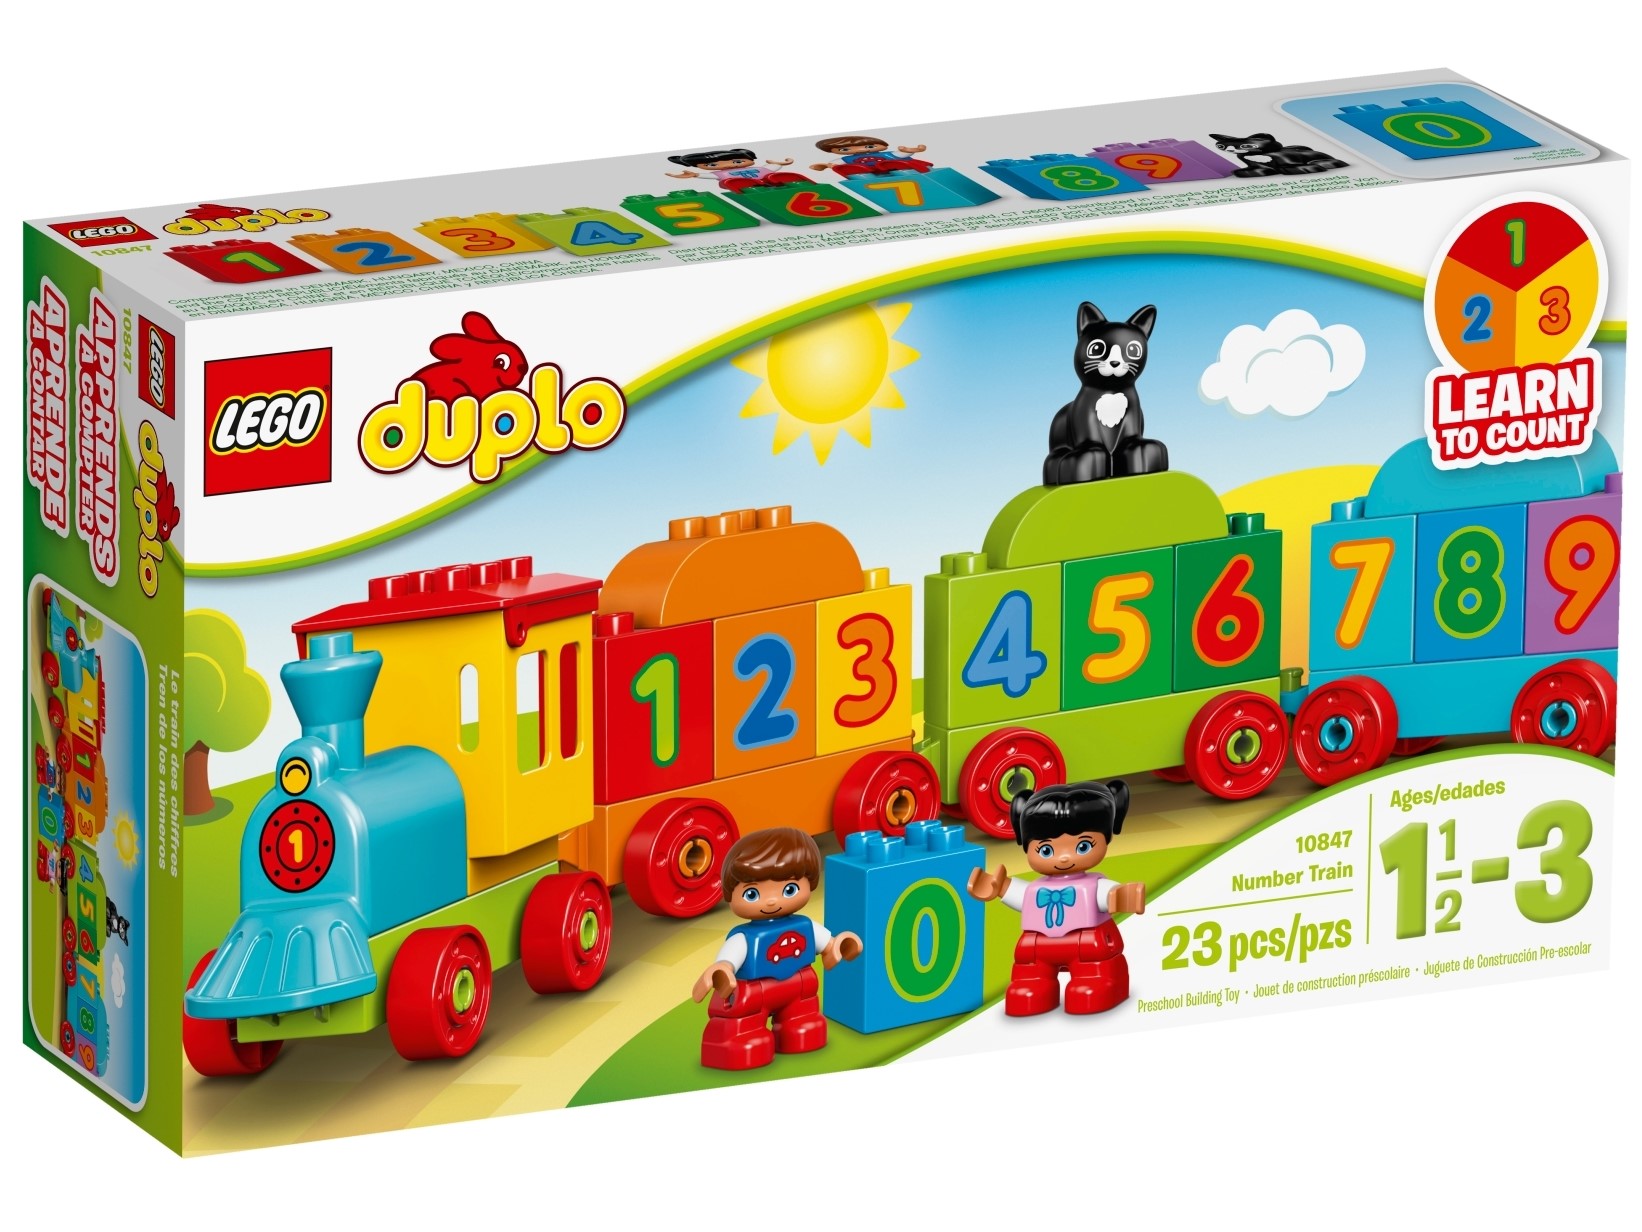 Duplo LEGO 10847 Duplo Le Train des Chiffres Jeu De Construction Éducatif 